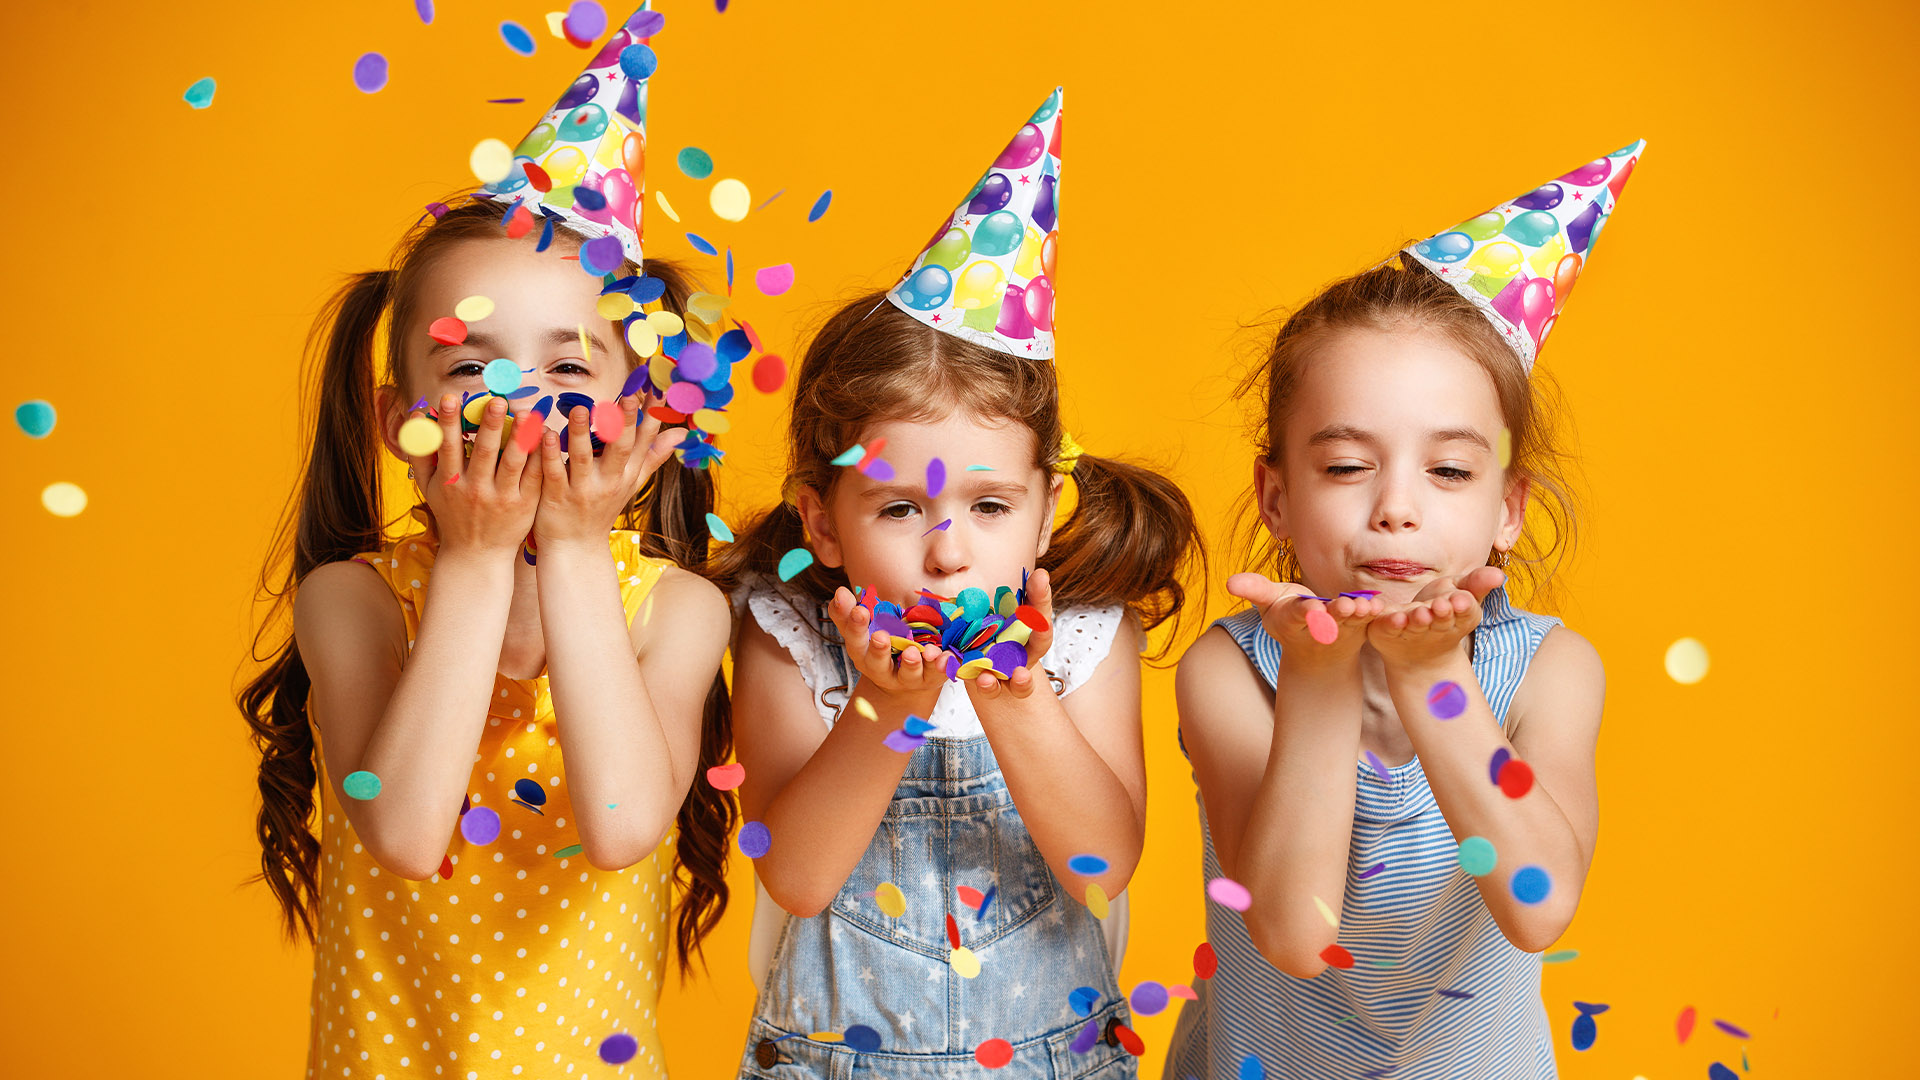 Inviti compleanno bambini – tantissime idee colorate e divertenti fai da te